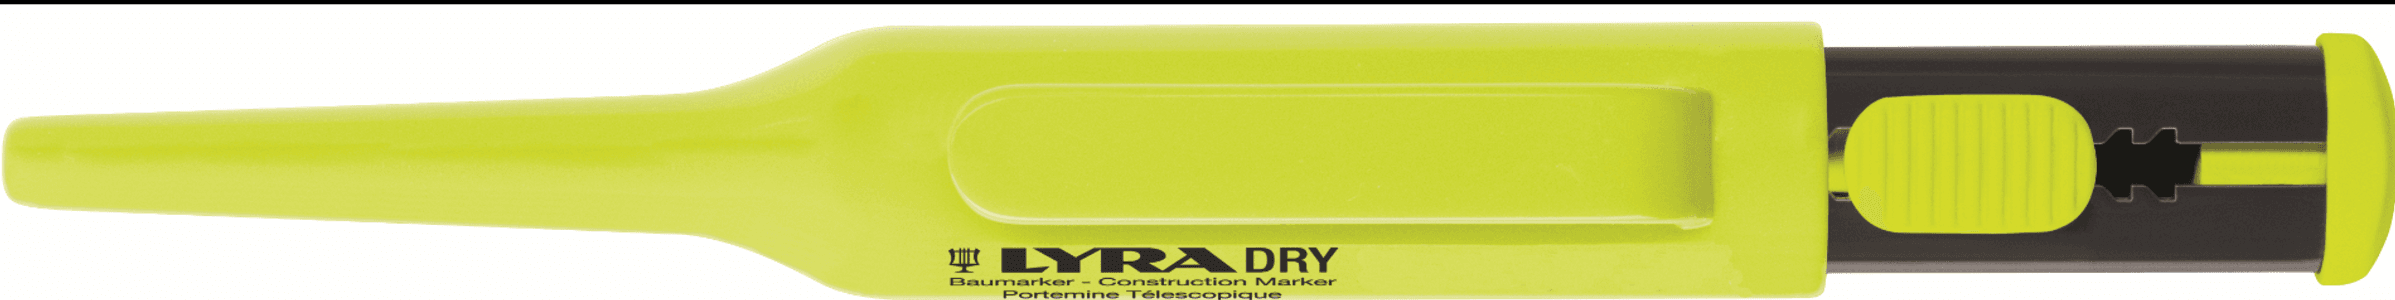 Traceur multi-surface LYRA DRY - ROMUS